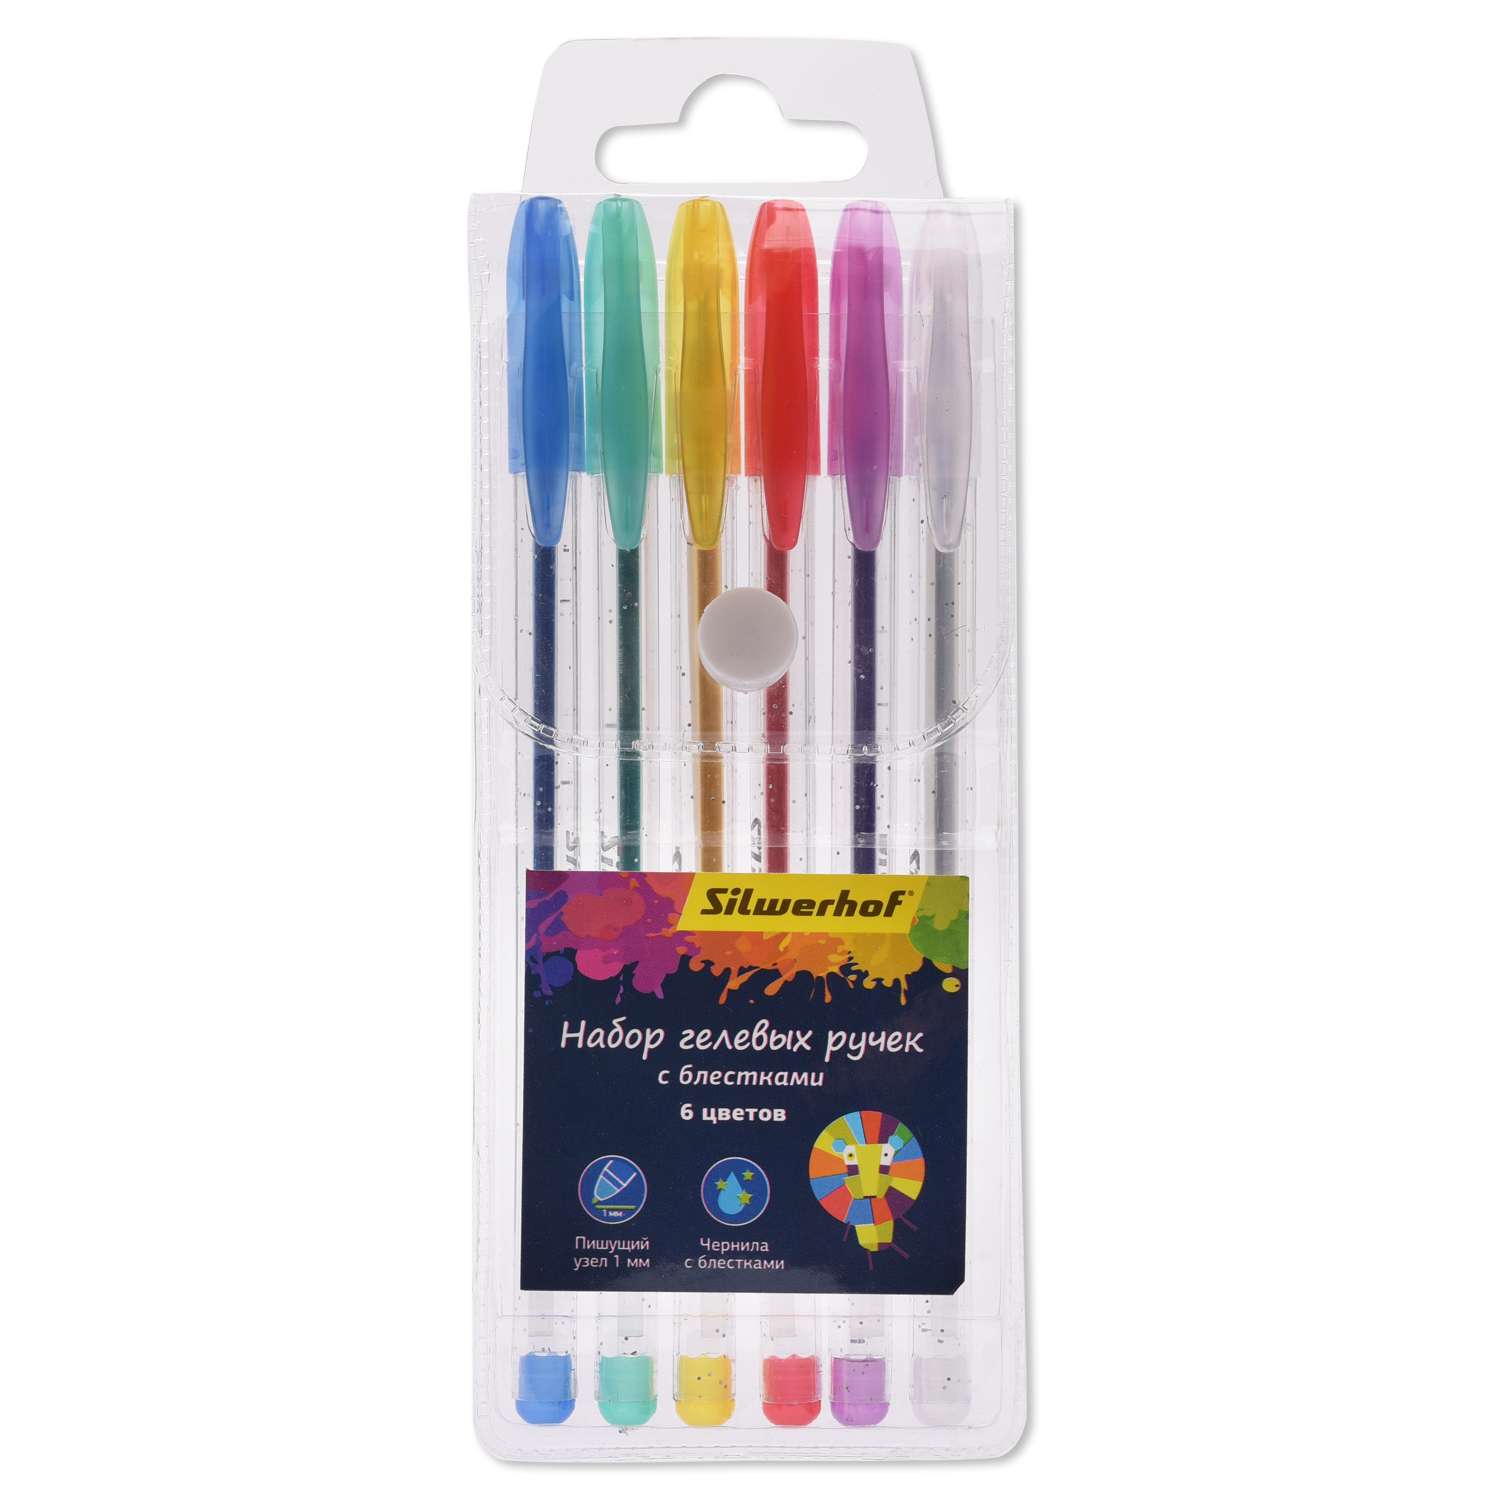 Ручки Silwerhof Цветландия гелевые 6 цветов - фото 2